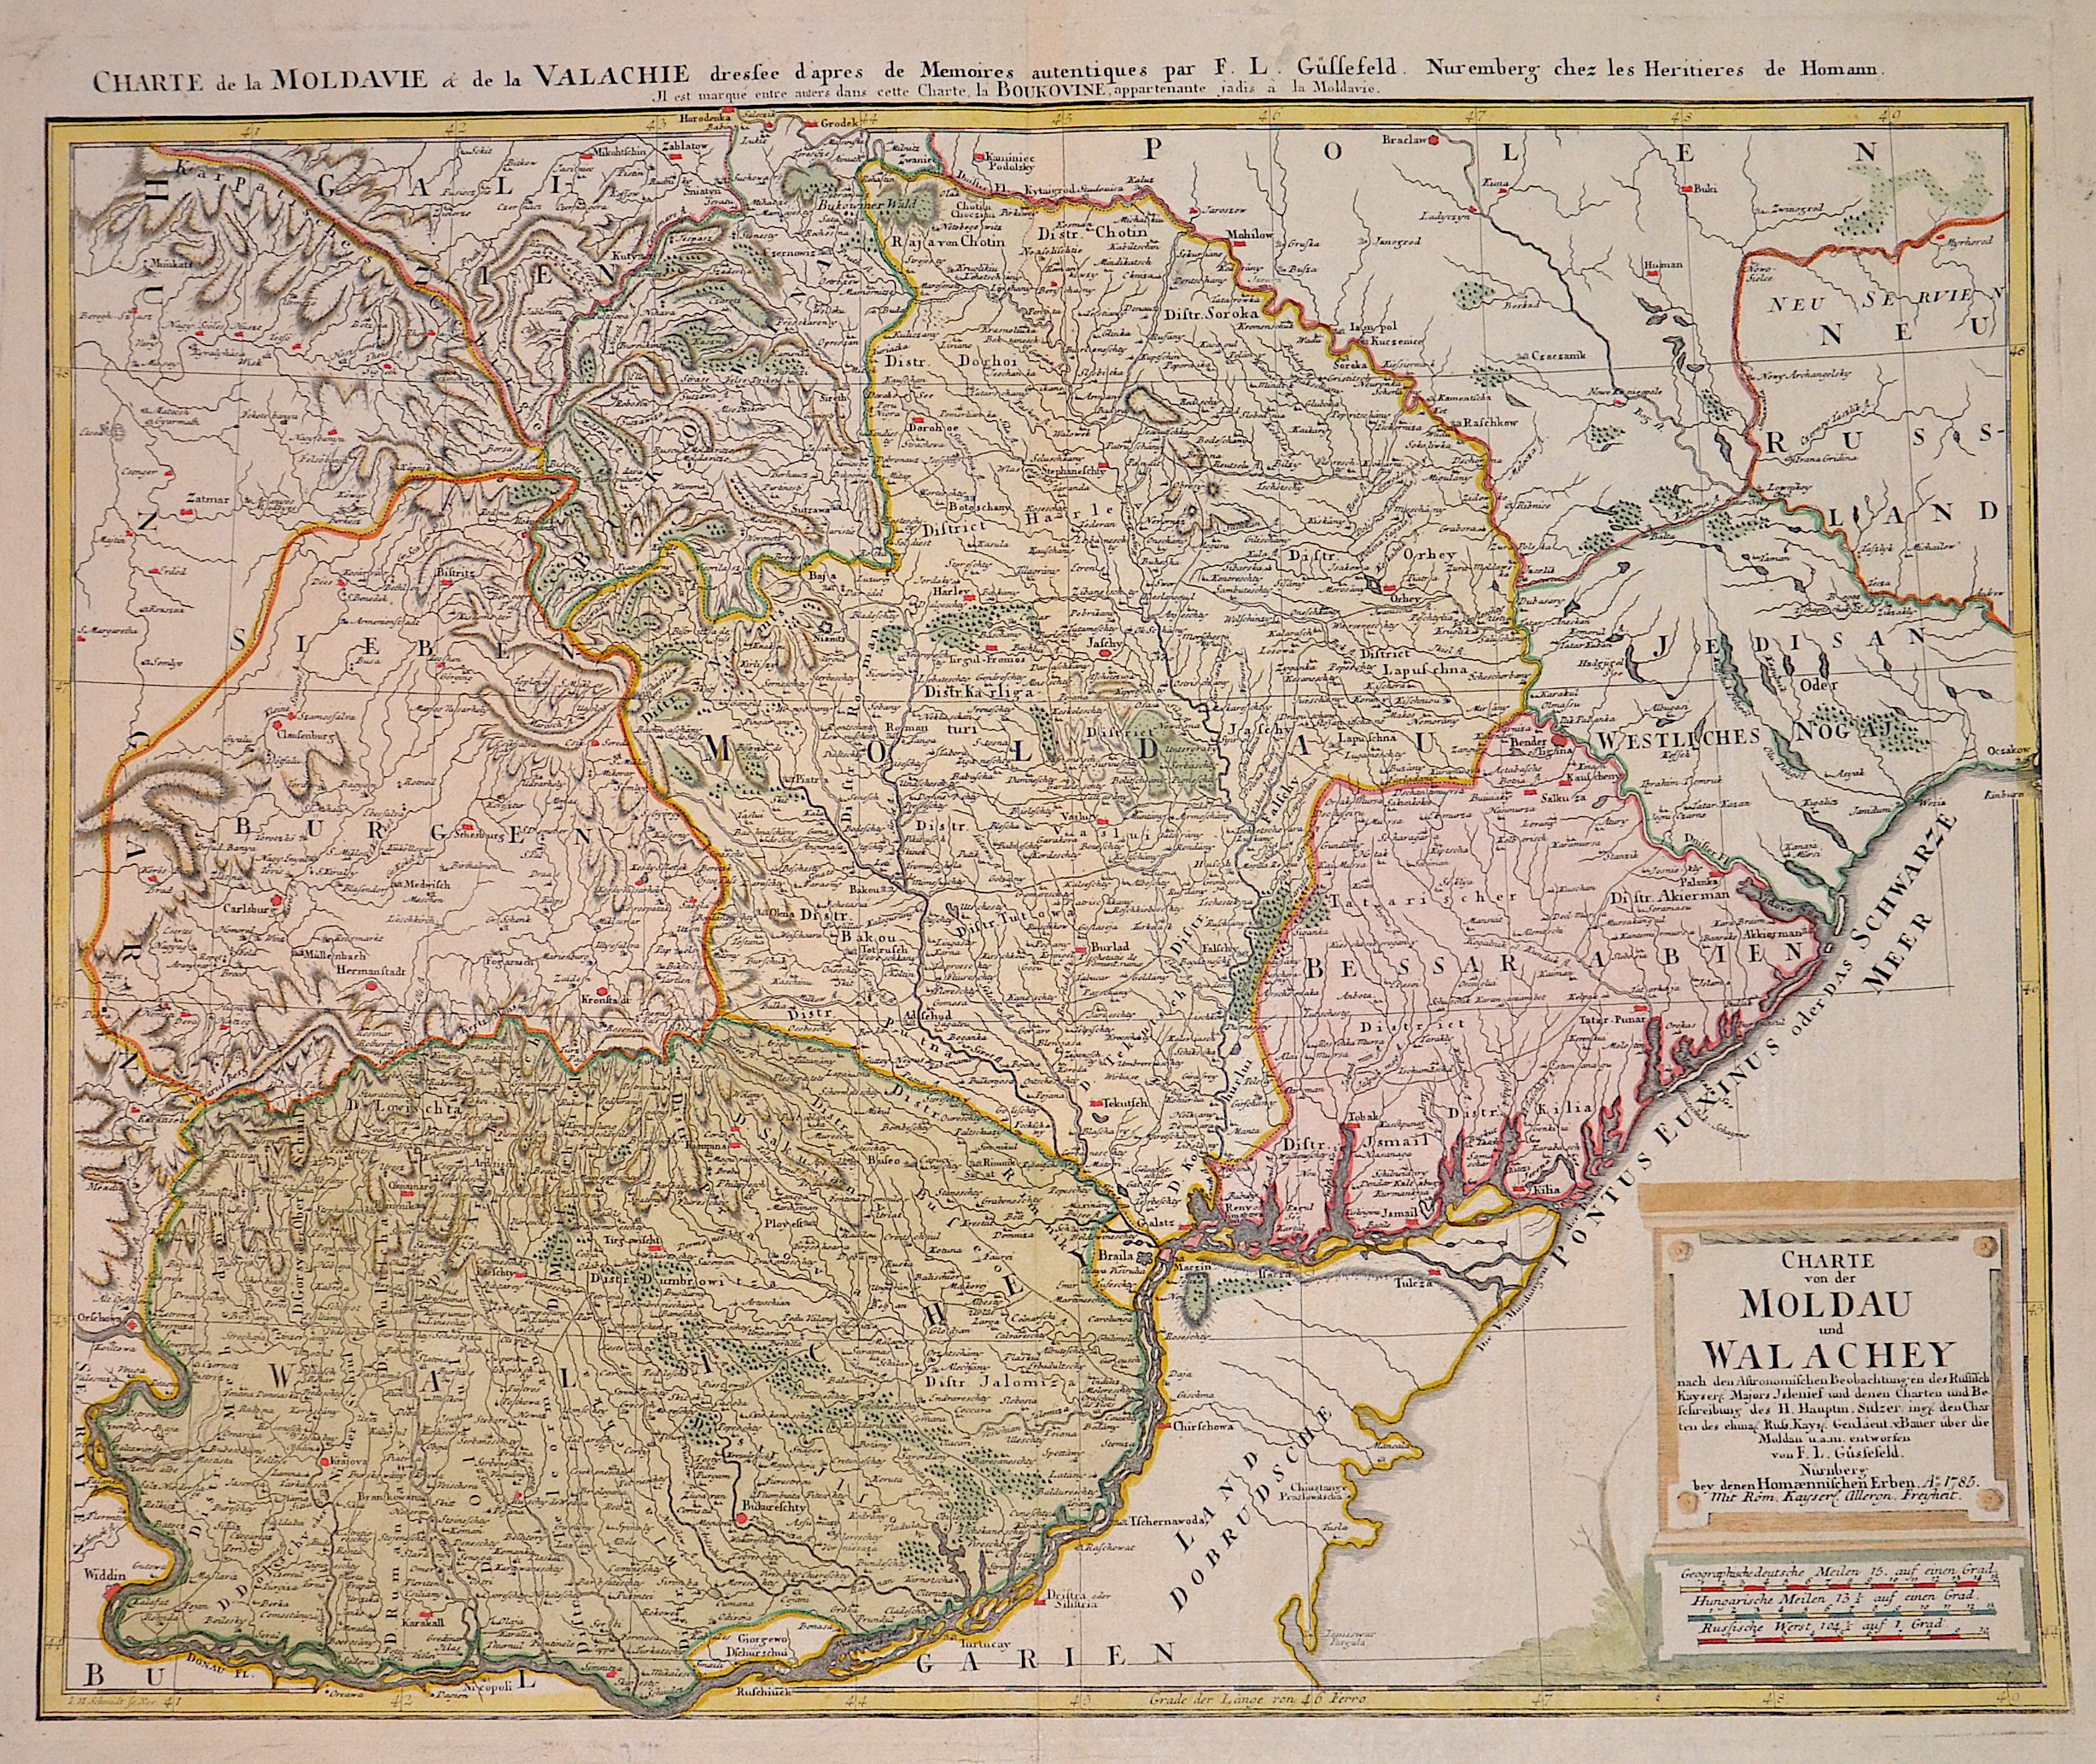 Güssefeld  Charte von der Moldau und Wallachey